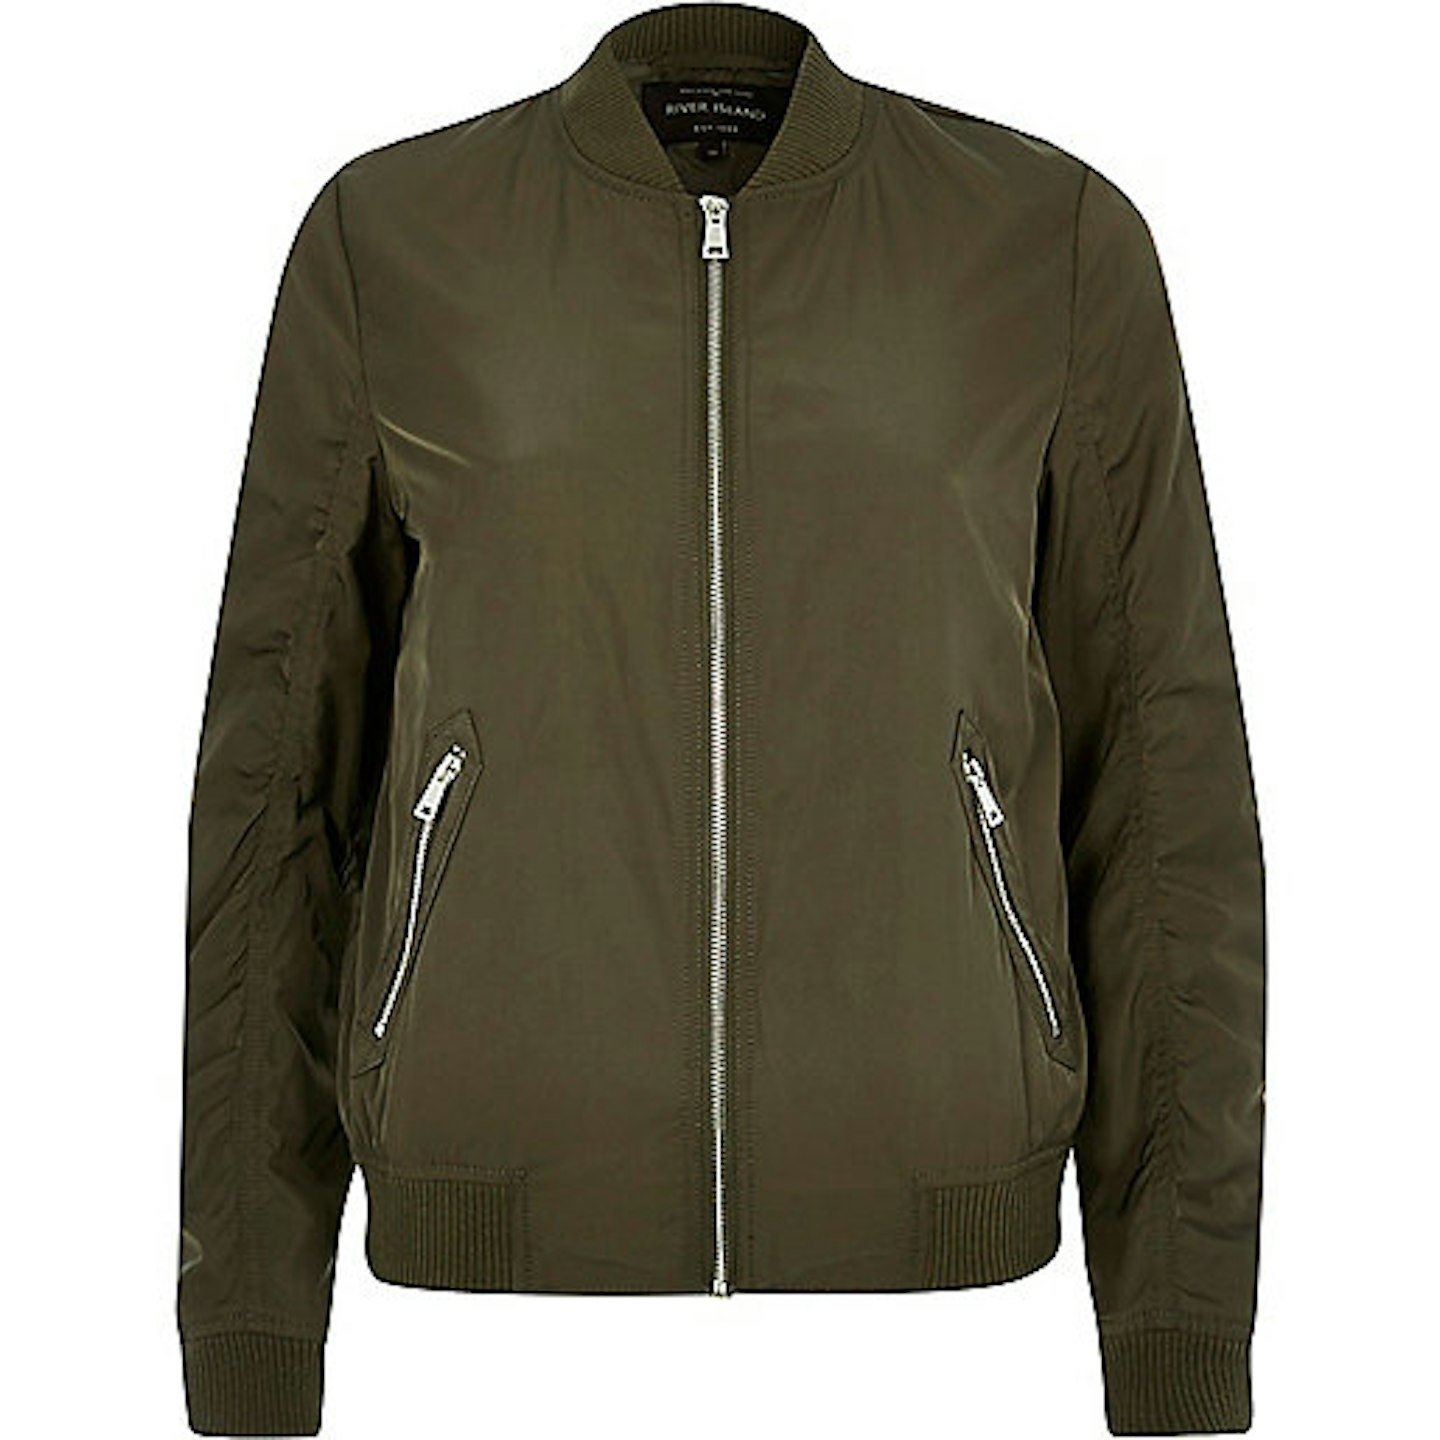 Khaki Green Bomber Jacket, £45